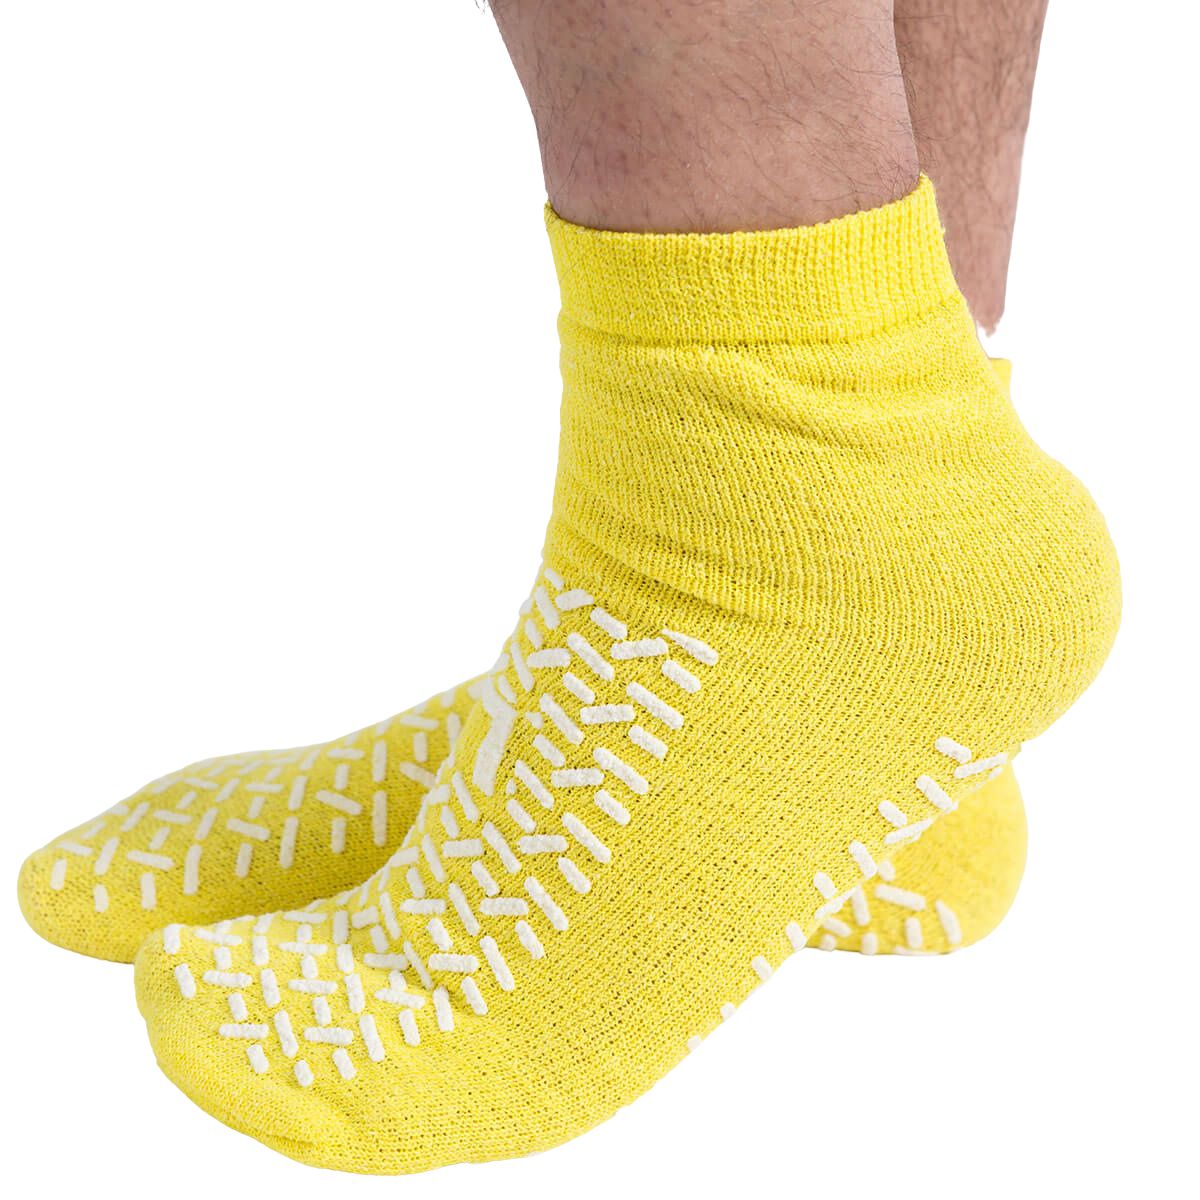 Unisex Hospital Slipper-Grip Socks - Clearance